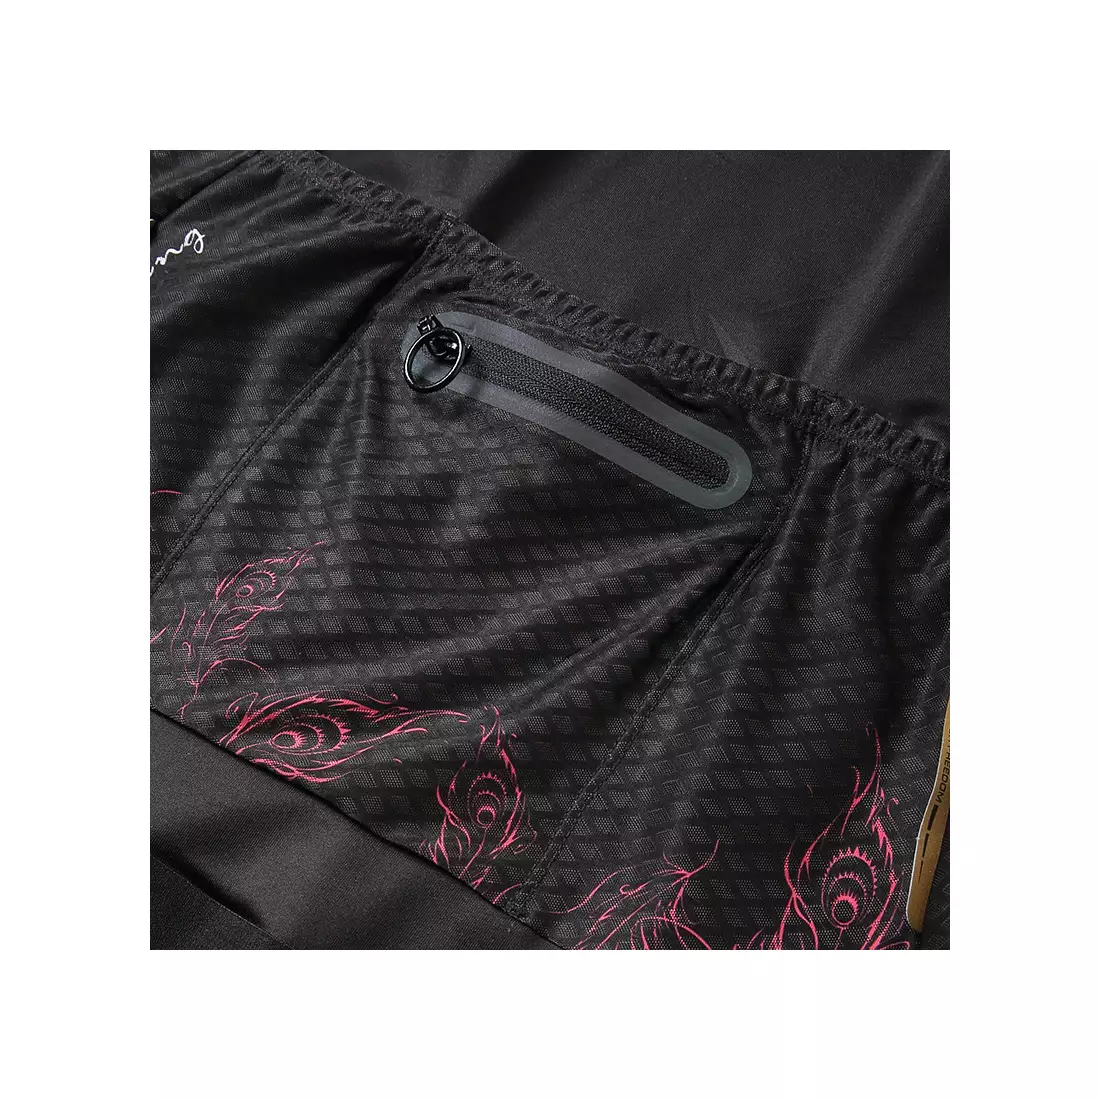 SANTIC női kerékpáros trikó fekete L8C02134